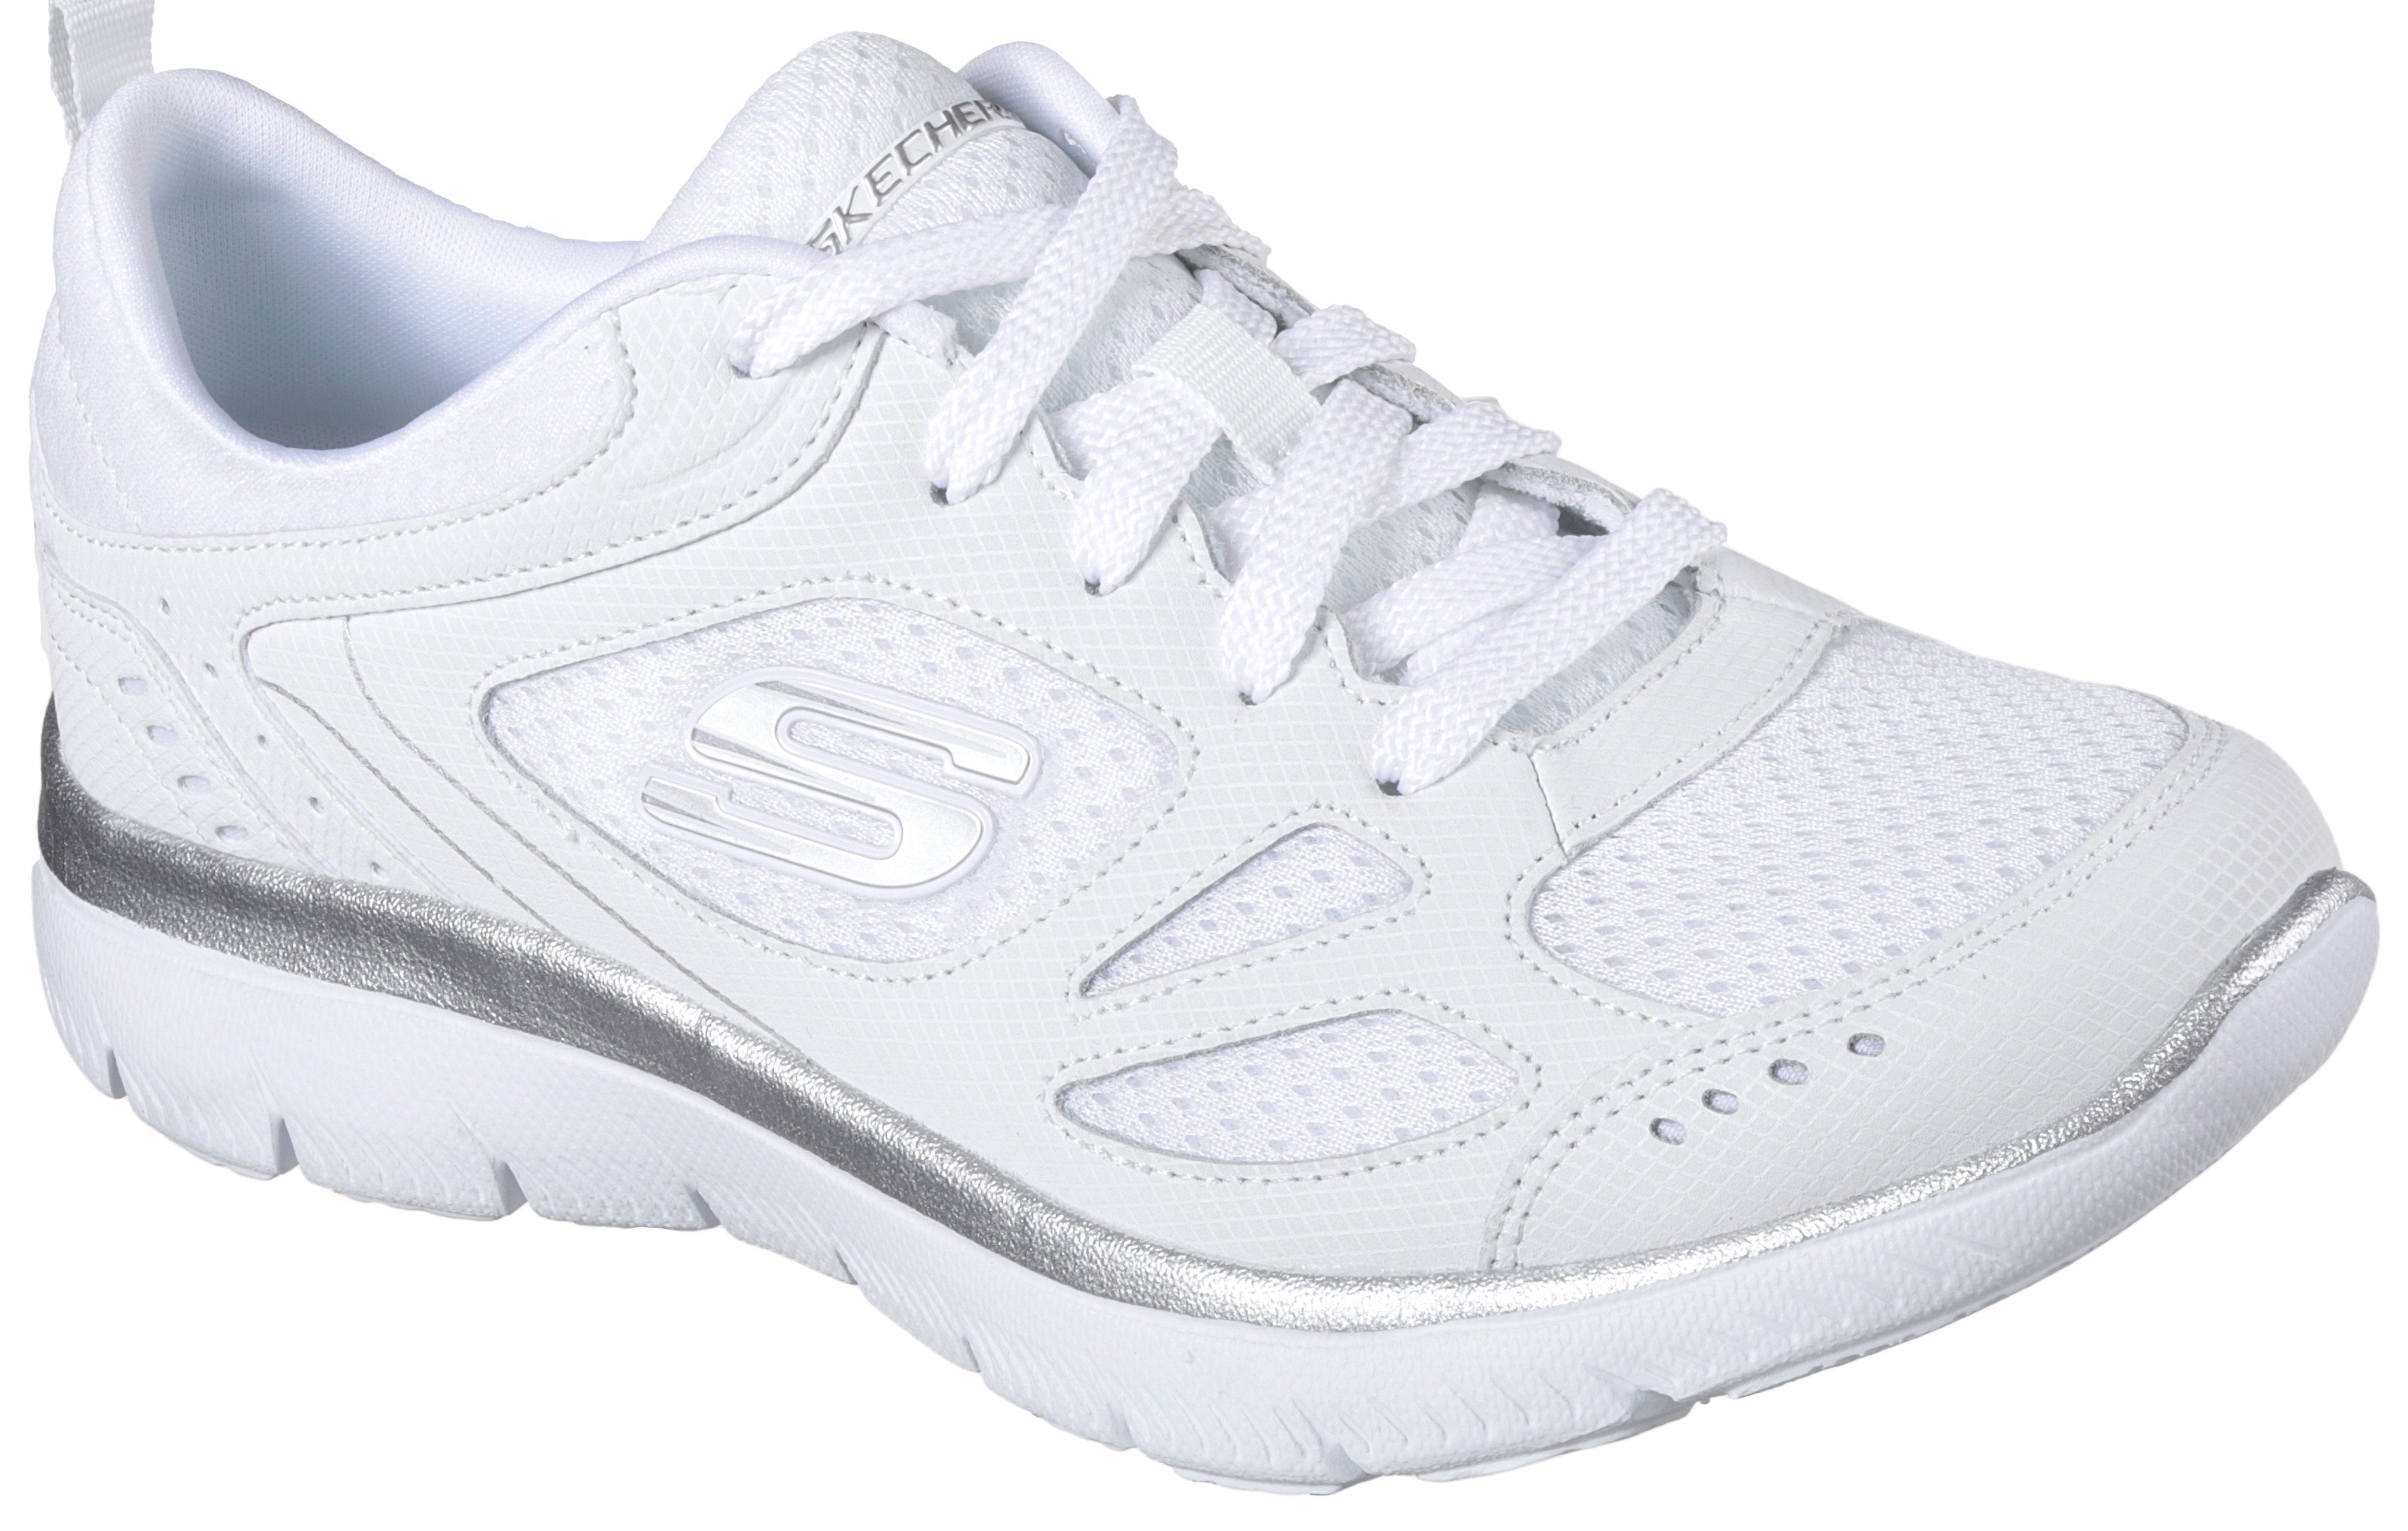 Weiße Skechers Ledersneaker für Damen online kaufen | OTTO